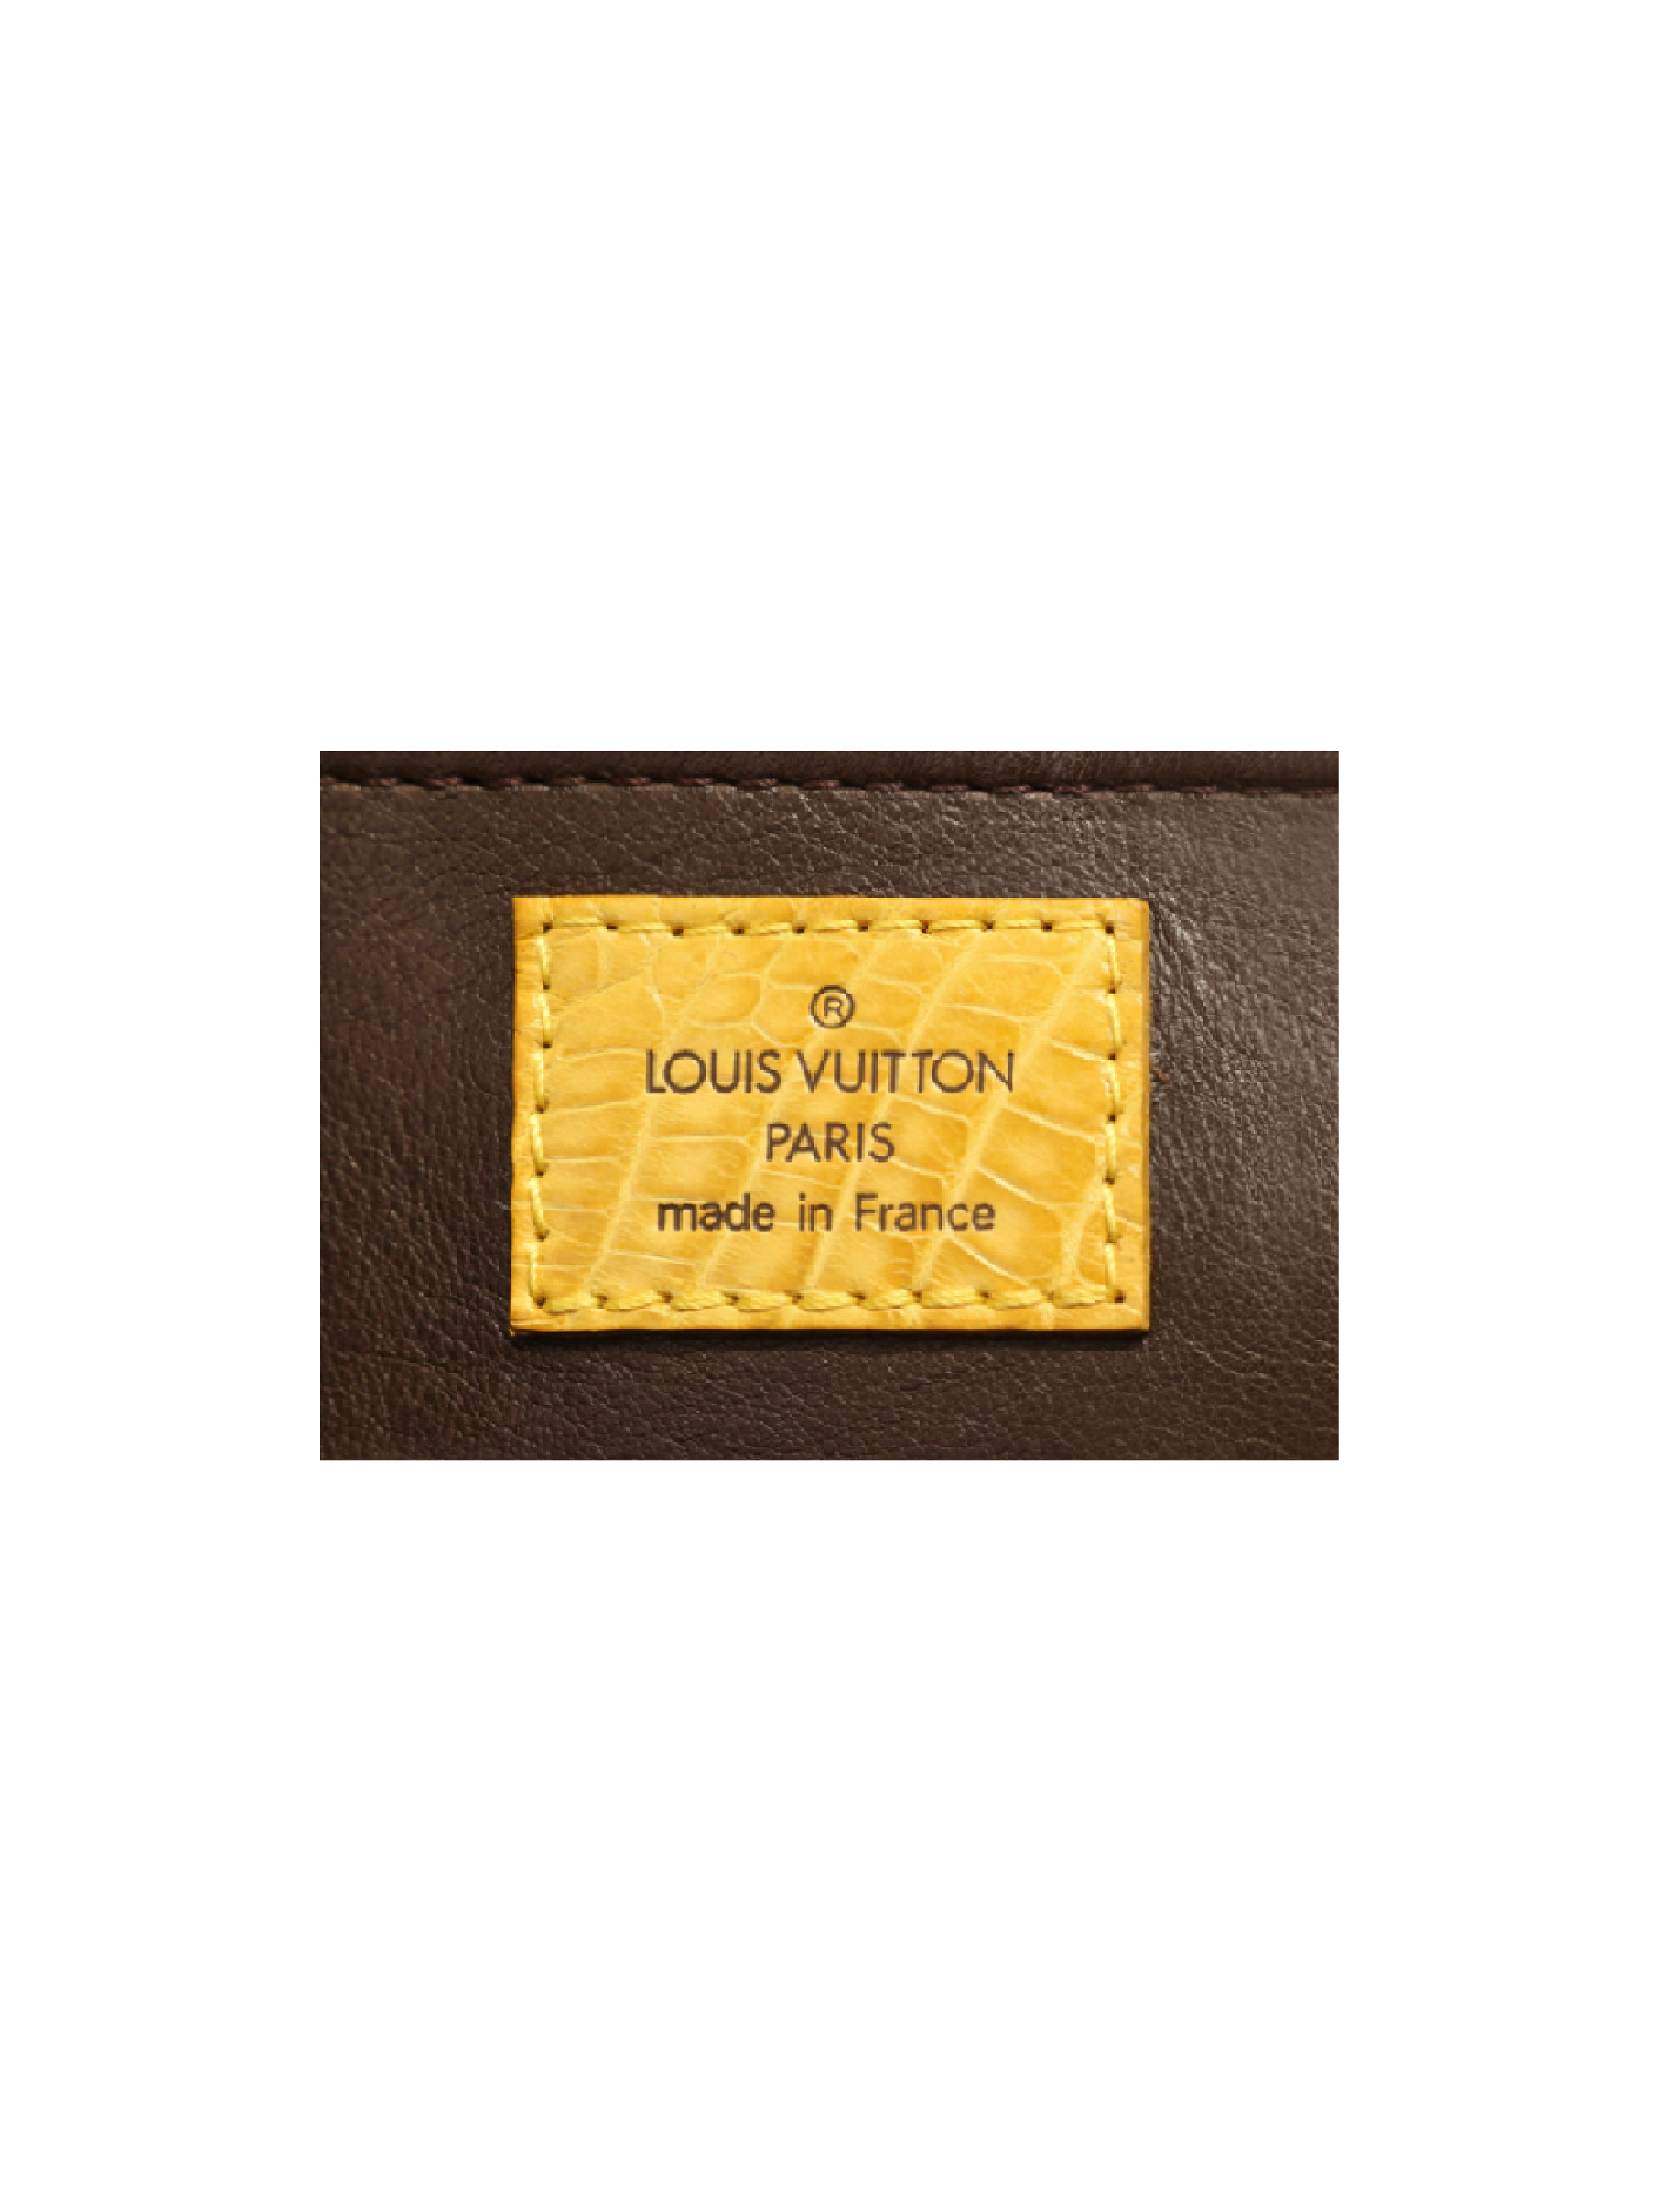 Trompe l'œil Louis Vuitton Bags - Vestiaire Collective